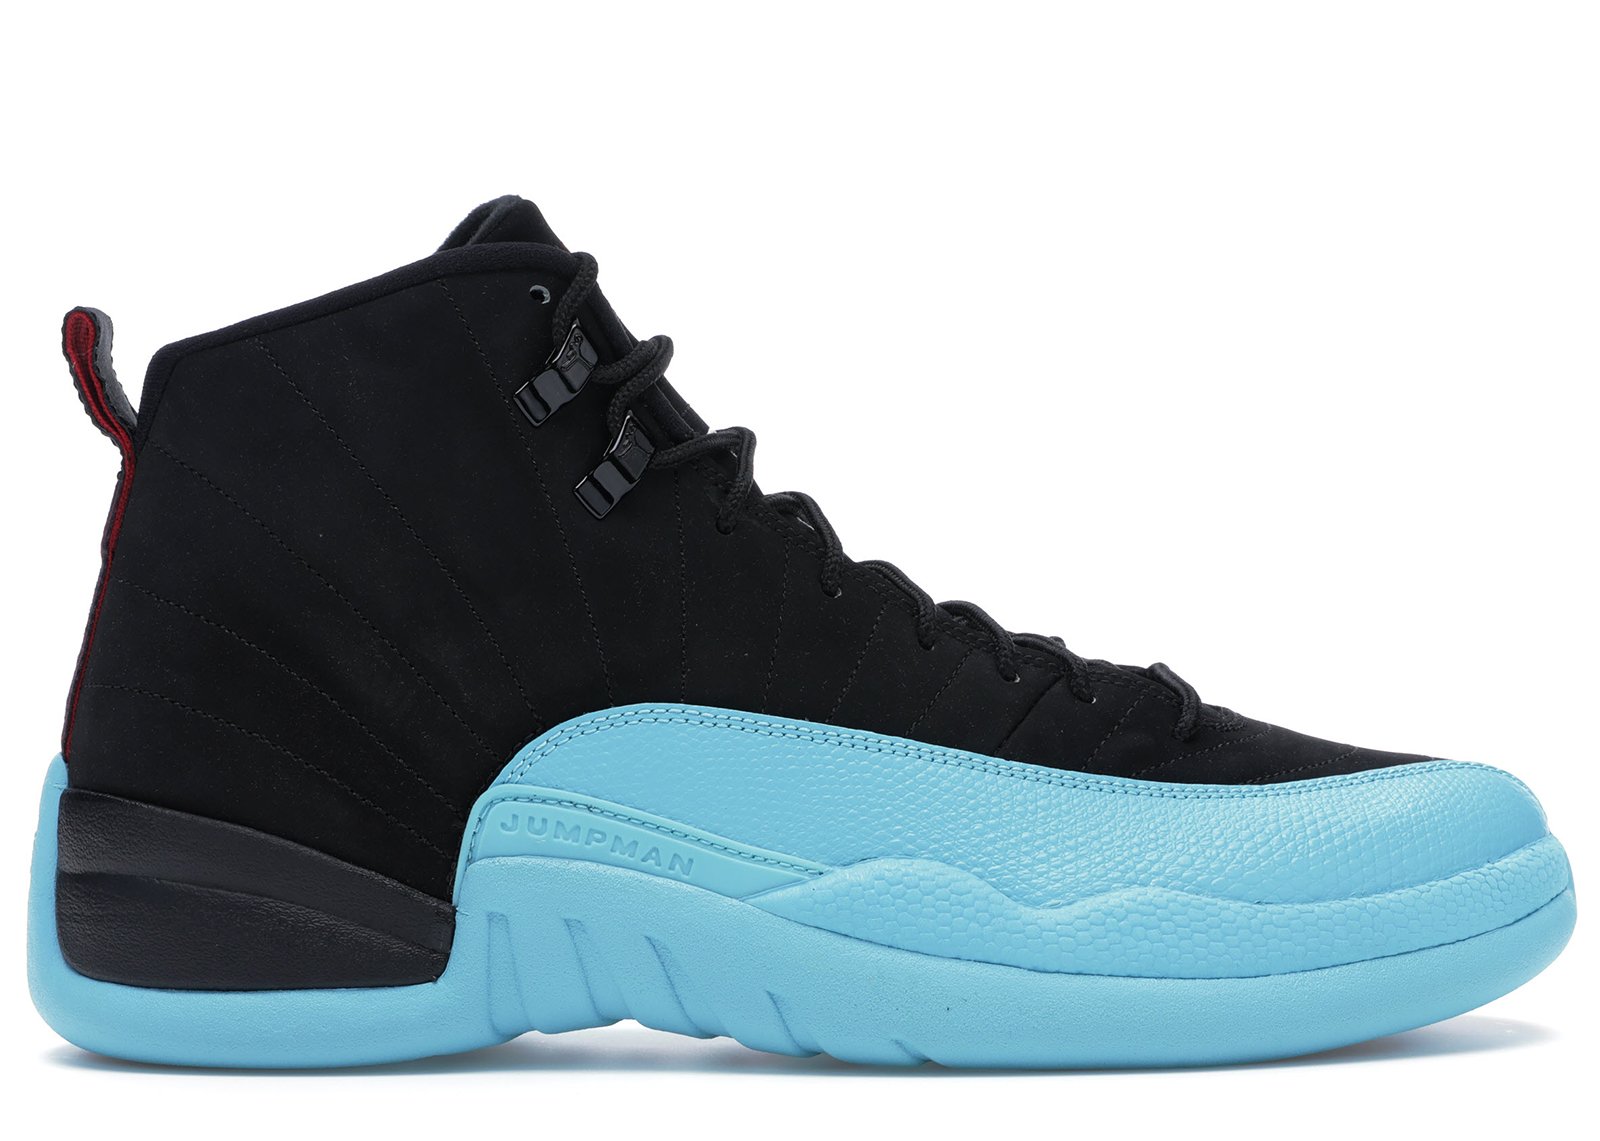 Jordan 12 Retro Gamma Blue sneakers